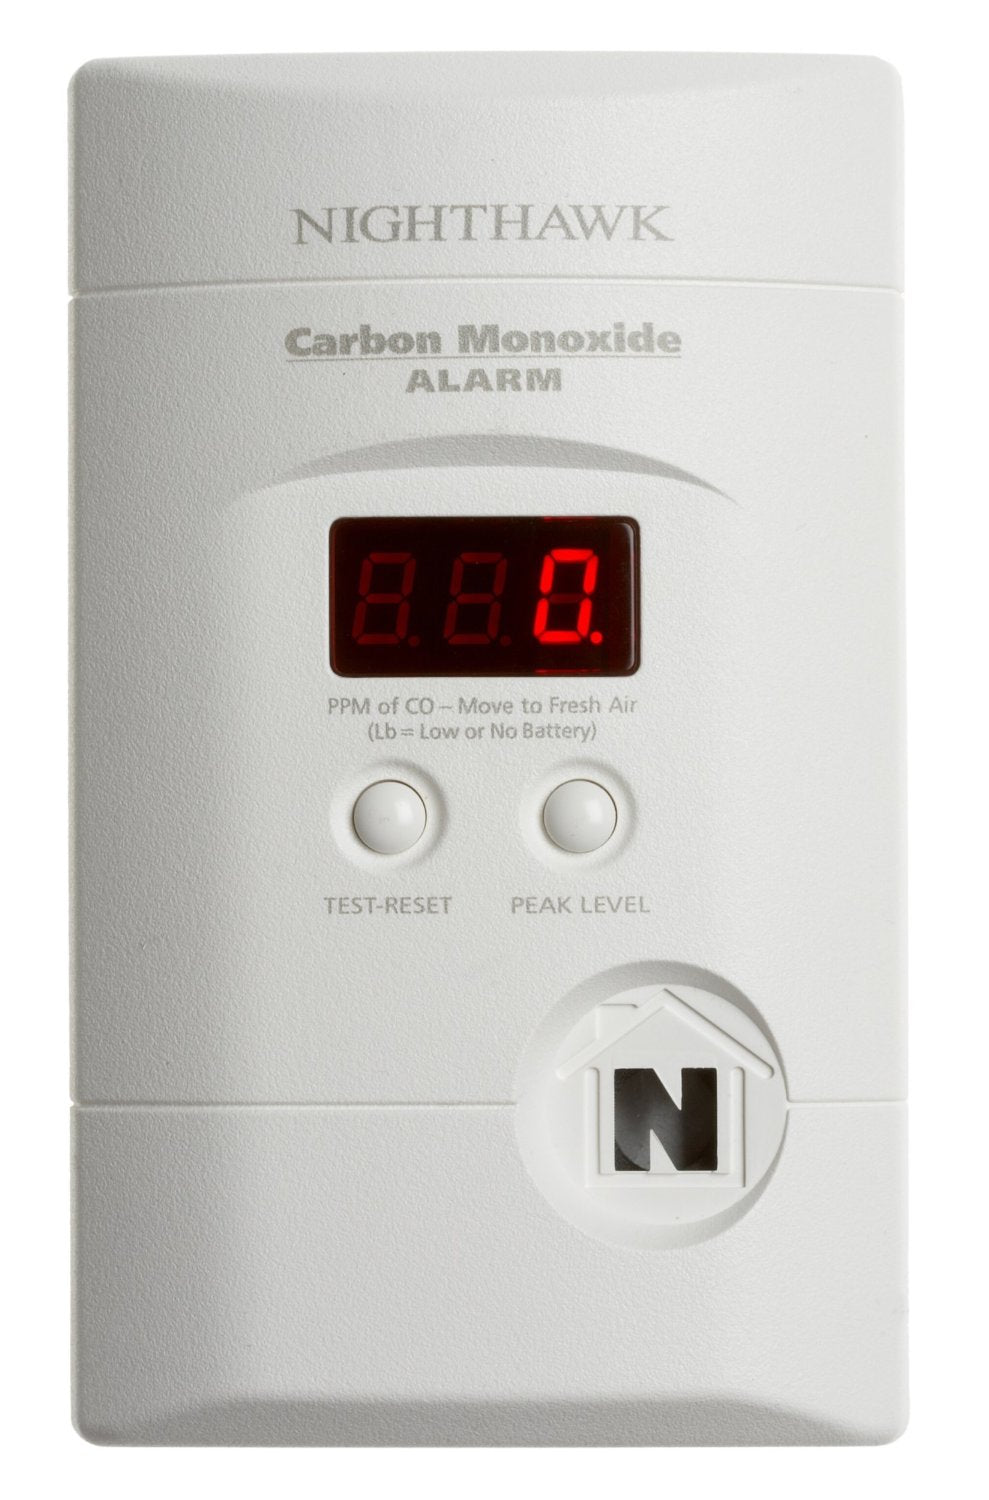 buy carbon monoxide detectors at cheap rate in bulk. wholesale & retail professional electrical tools store. home décor ideas, maintenance, repair replacement parts